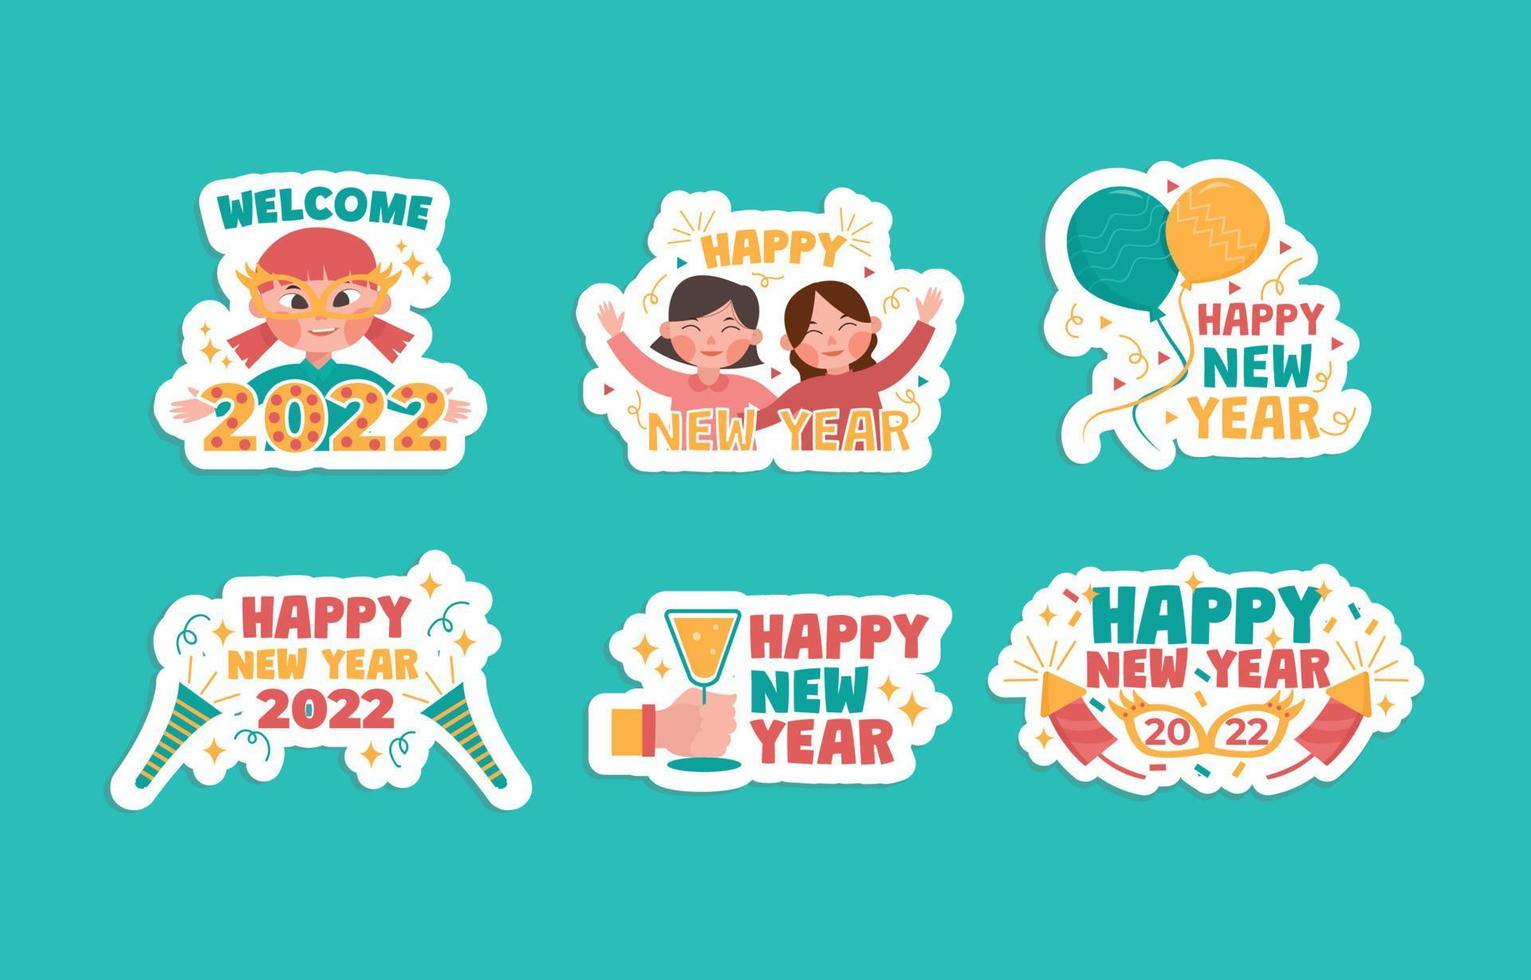 adesivo colorido fofo de vetor grátis conceito de feliz ano novo